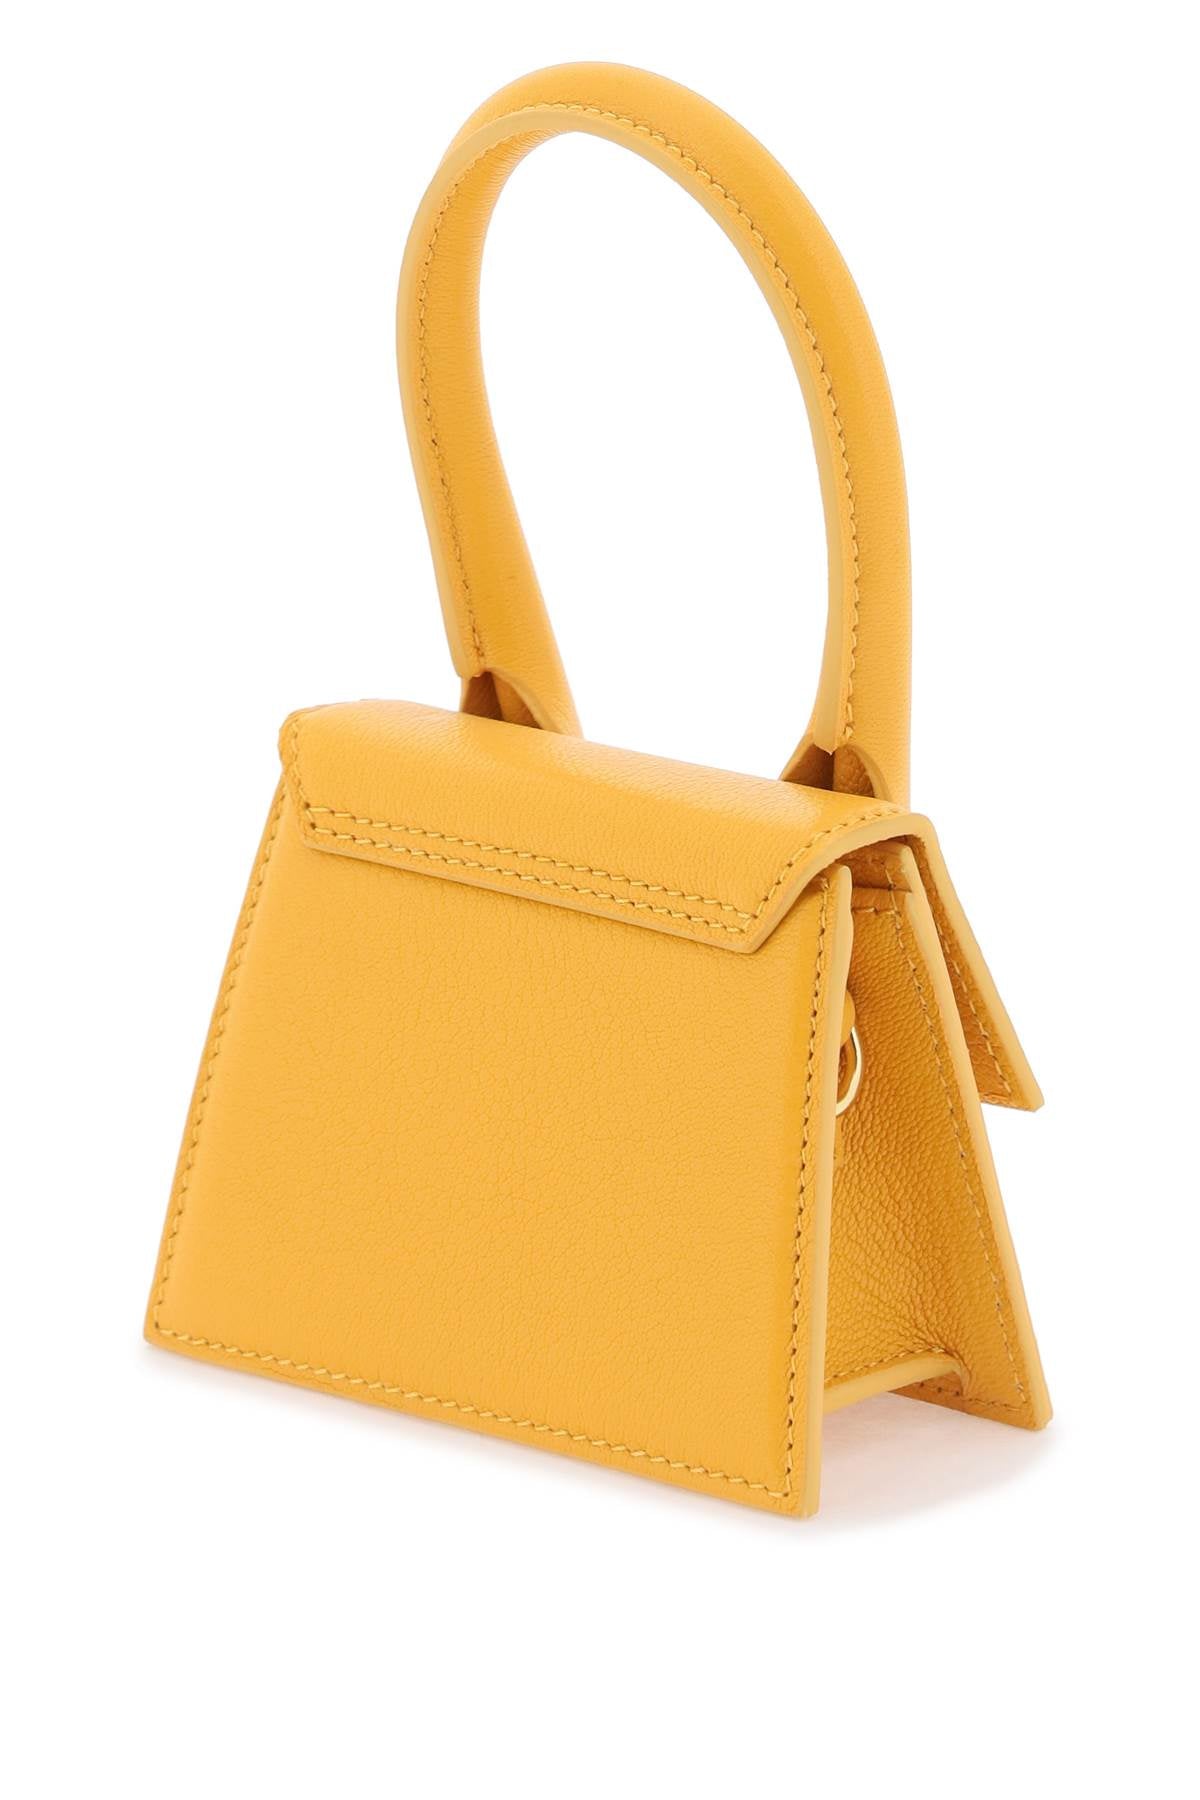 Shop Jacquemus Fashionable Orange Leather Clutch Bag For Women